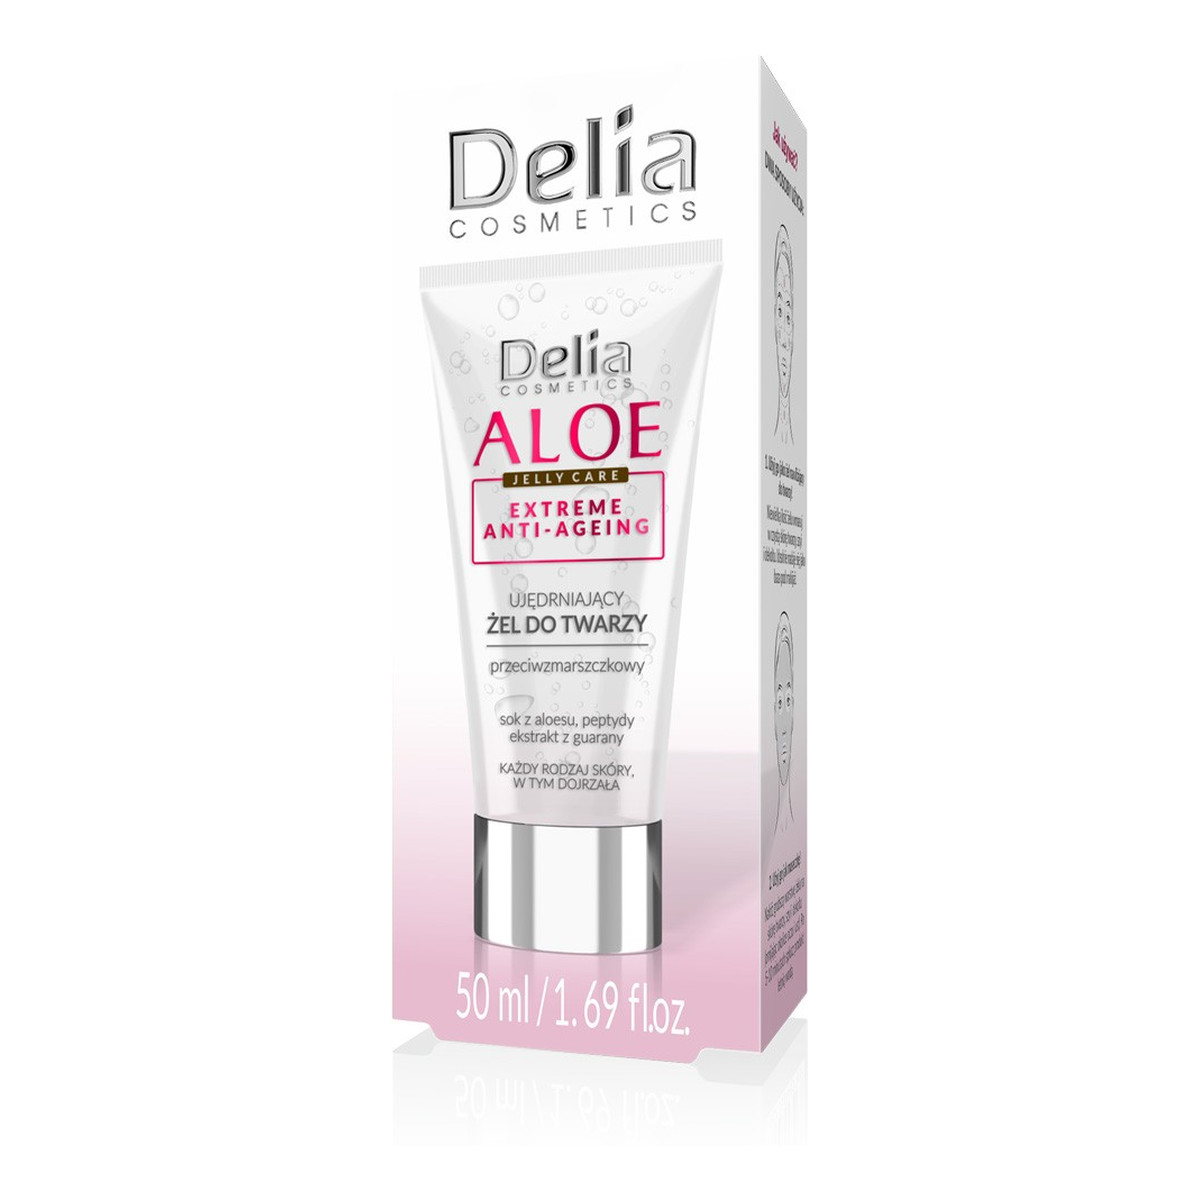 Delia Aloe Jelly Care Ujędrniający Żel do twarzy 50ml